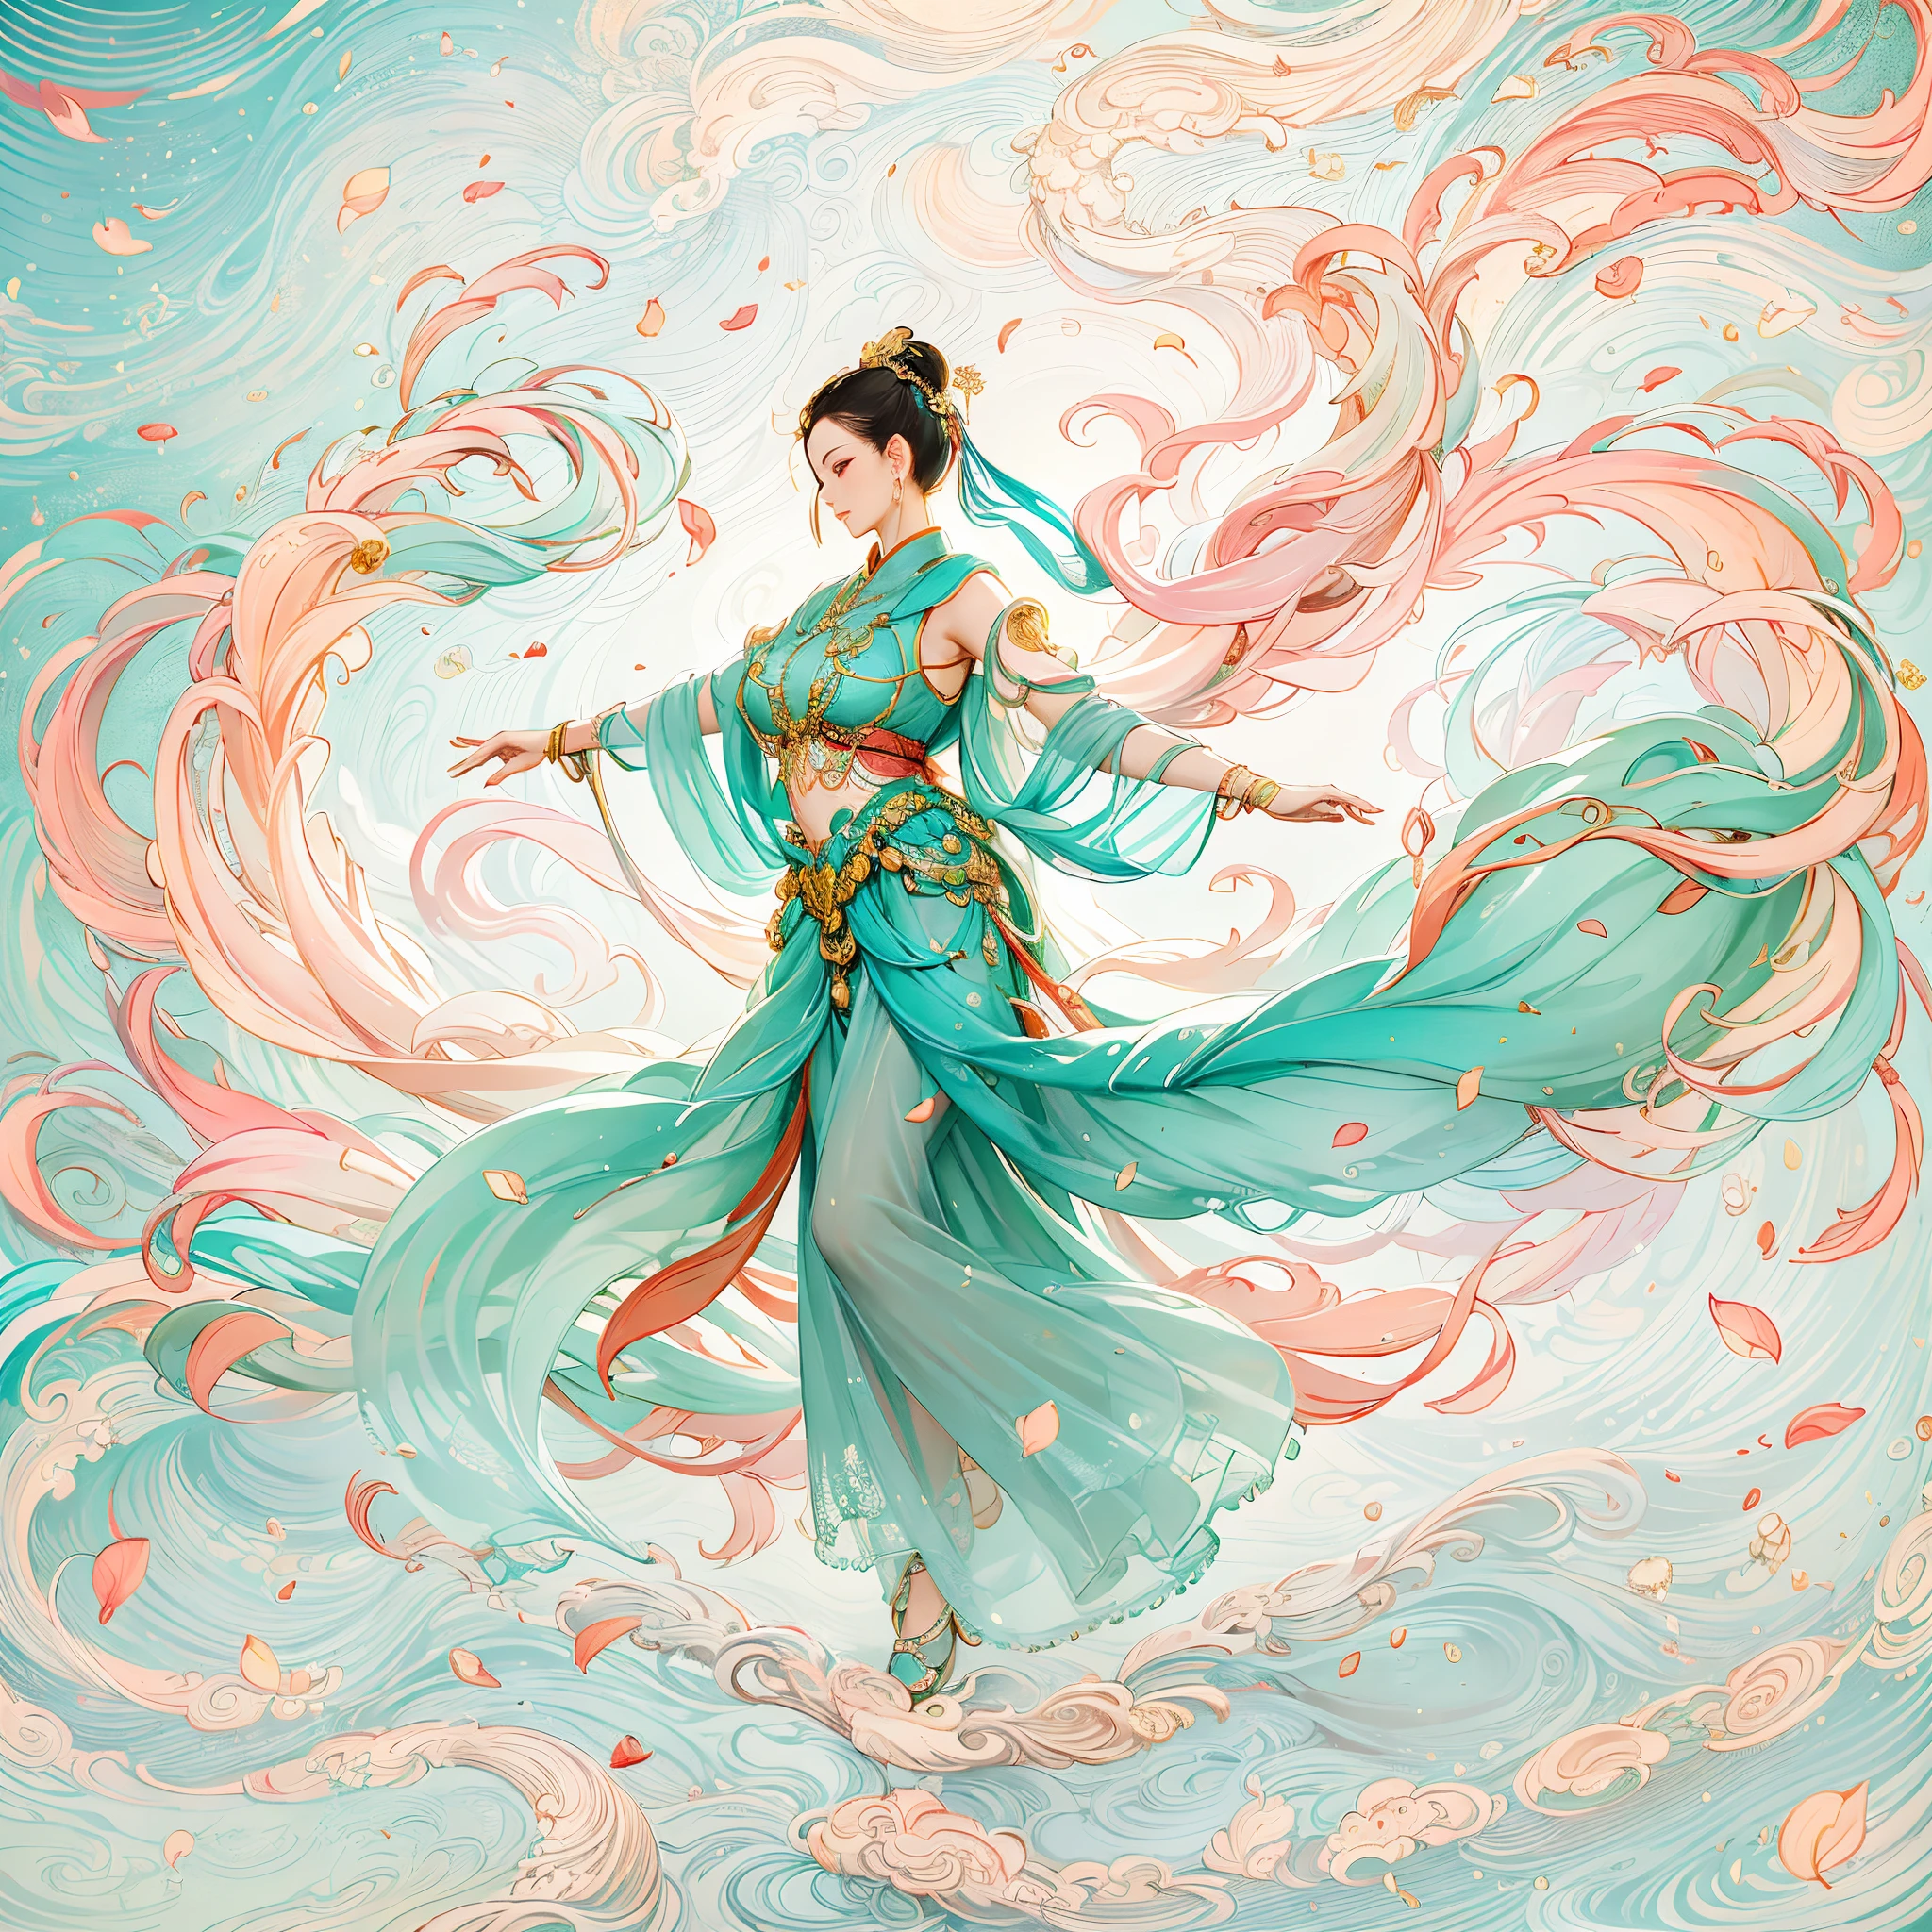 dunhuang style, 在天空中起舞, 中國古代美女, 絲綢漢服, 來吧絲帶, 優美的舞蹈動作, 墨水畫風格, 乾淨的顏色, 果斷削減, 一個空白, 印象派, 柔和的燈光，夢幻光芒， ( 散景)，傑作, 超詳細, 史诗般的作品, 最好的品質, 4k，